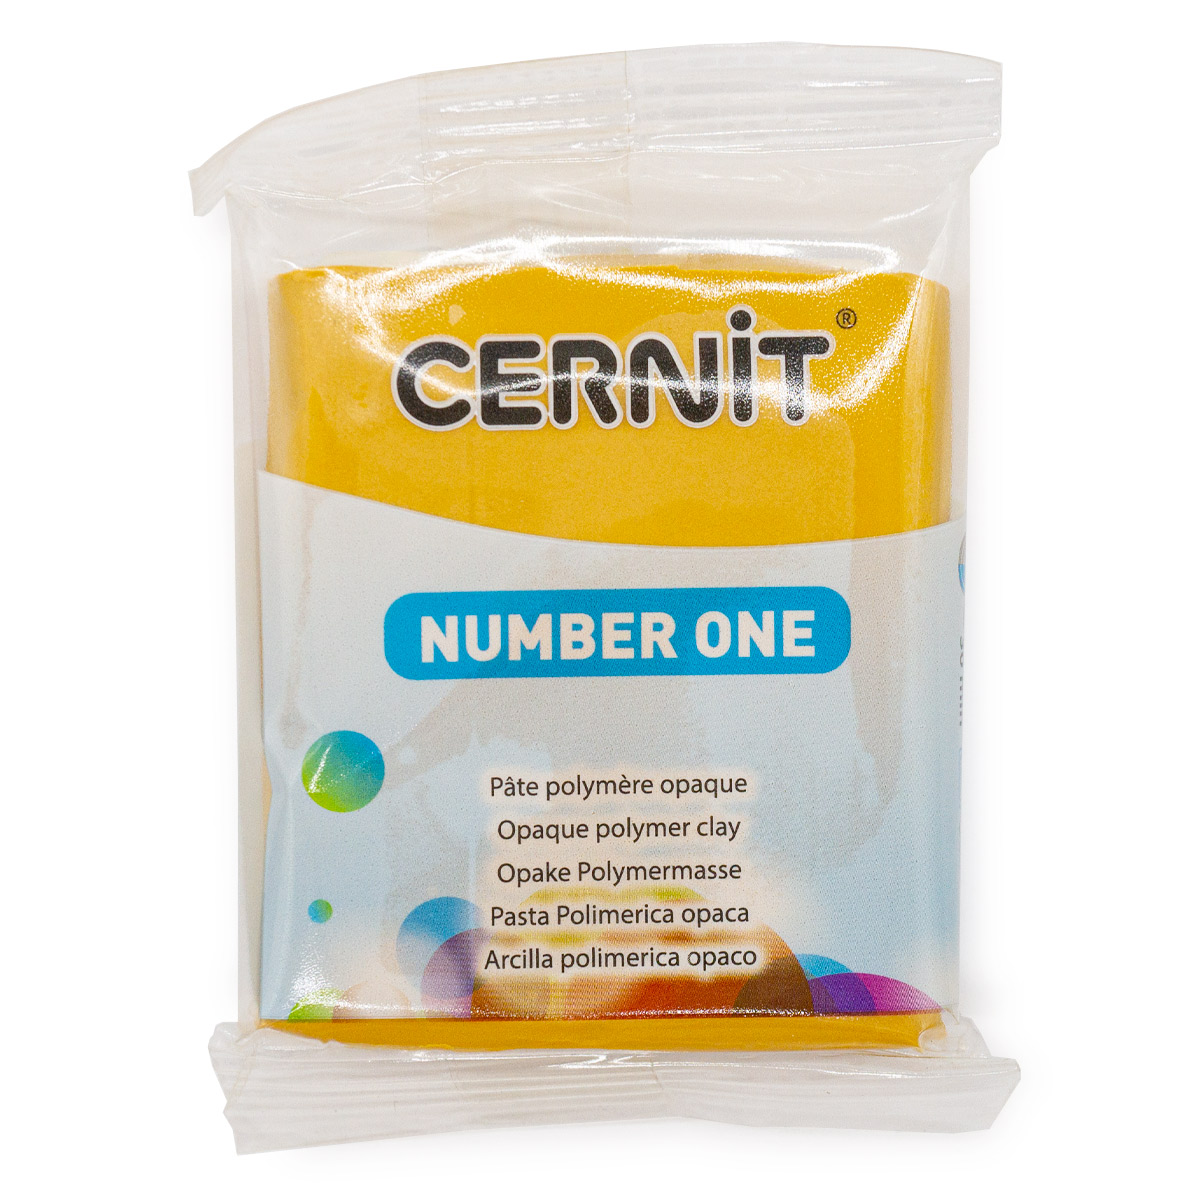 CE0900056 Пластика полимерная запекаемая Cernit № 1, 56-62 г